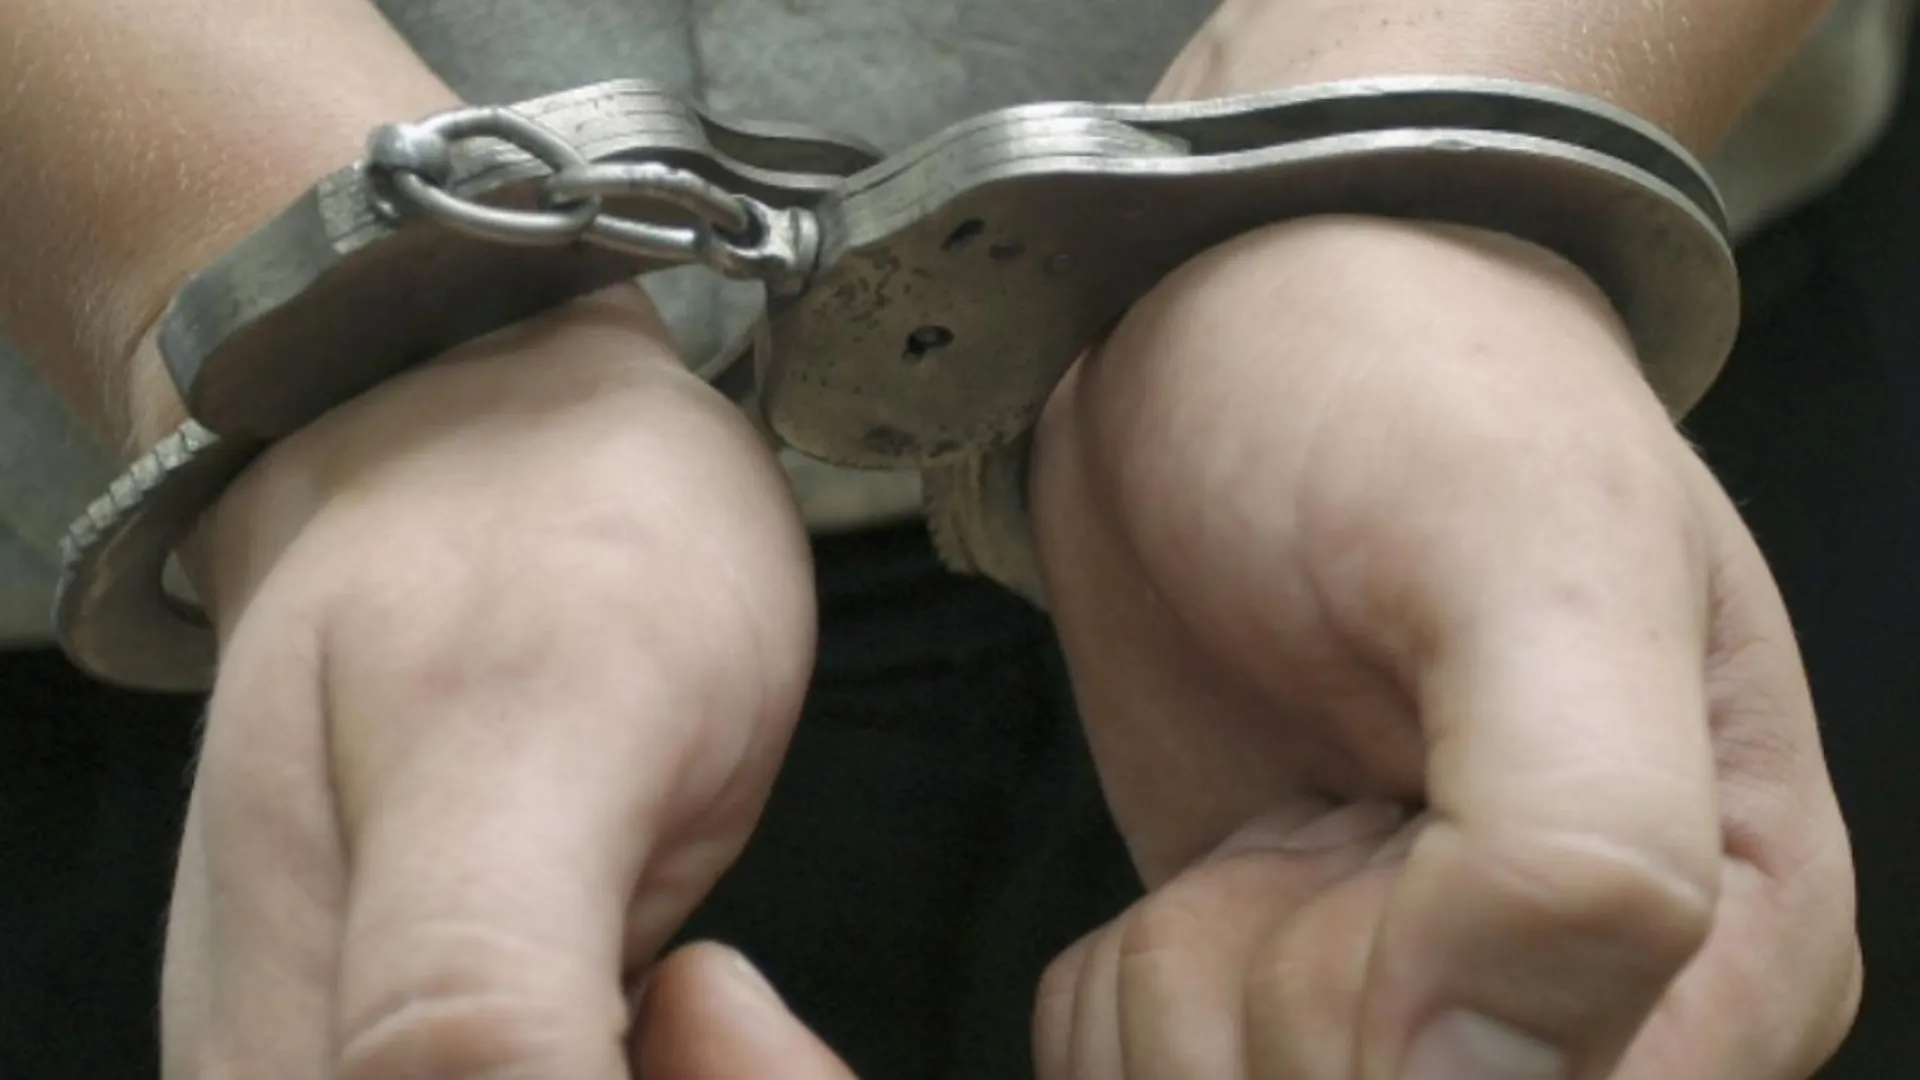 Иркутская полиция задержала пособника террористов, который находился в федеральном розыске